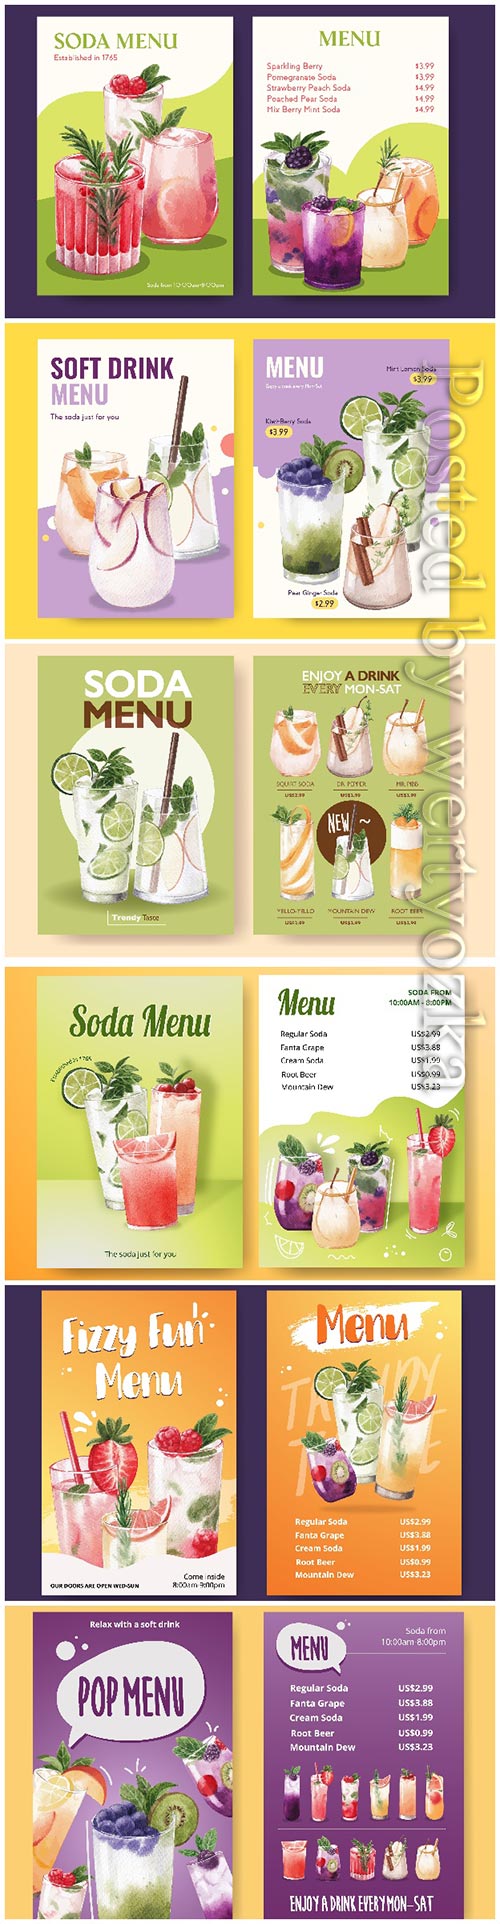 Soda drink menu watercolor illustration